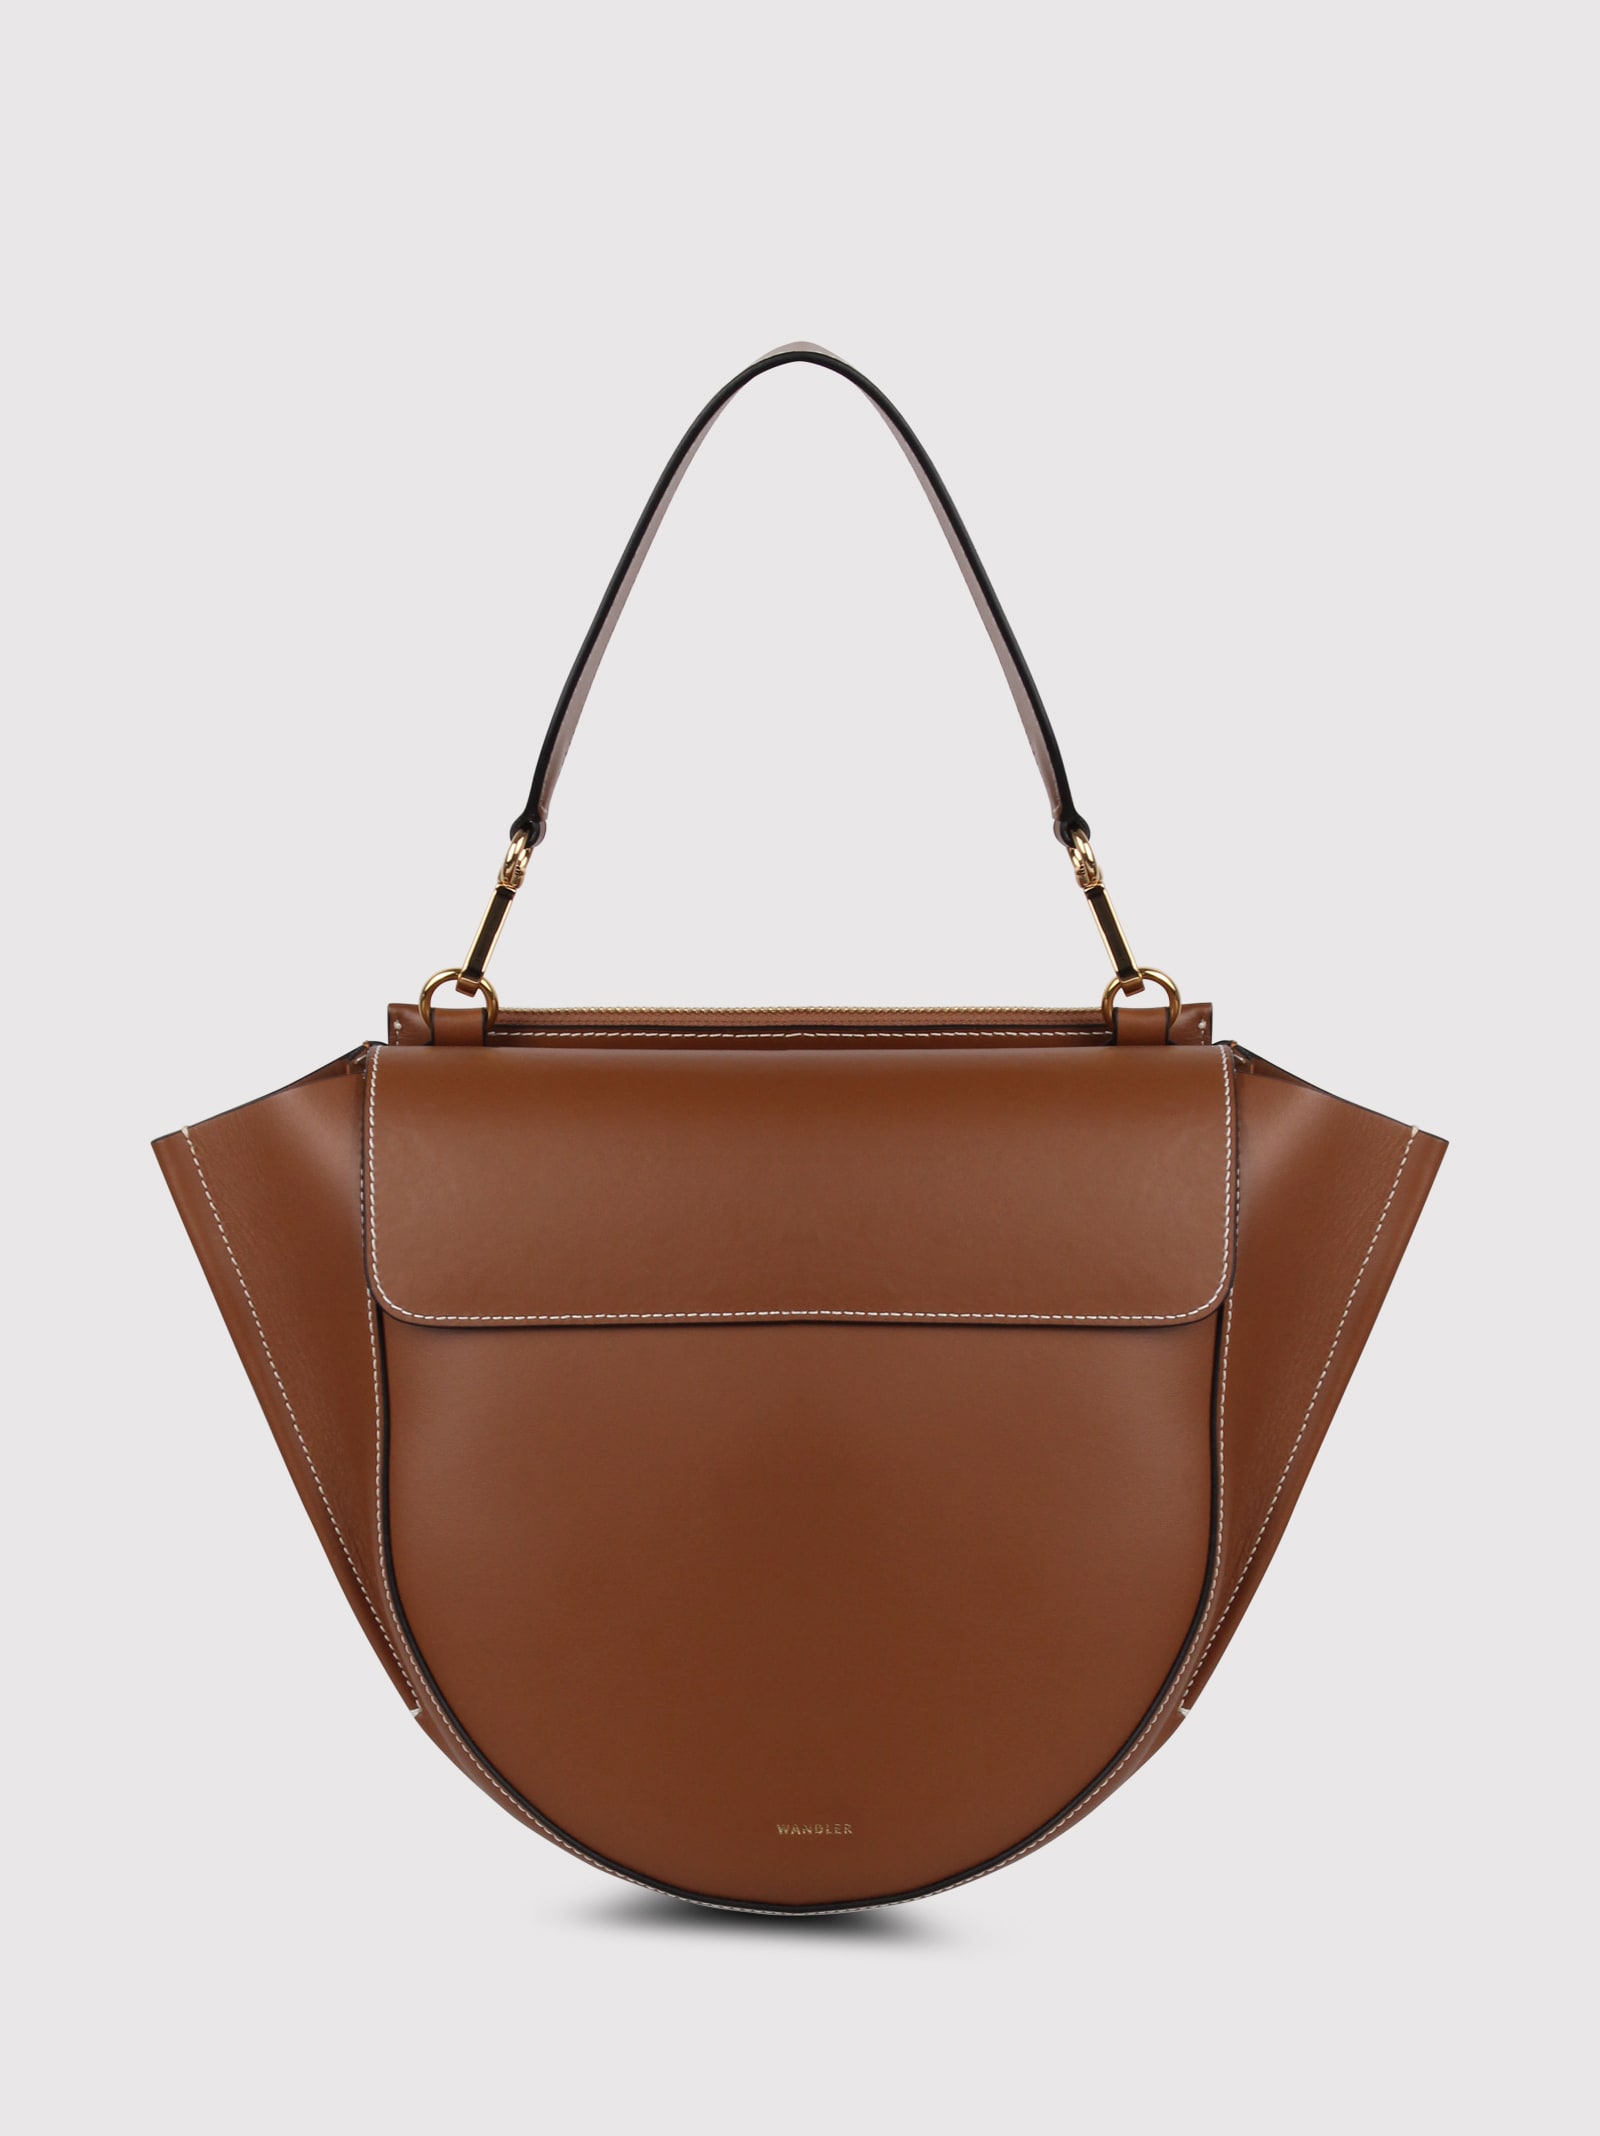 Medium Hortensia Leather Bag